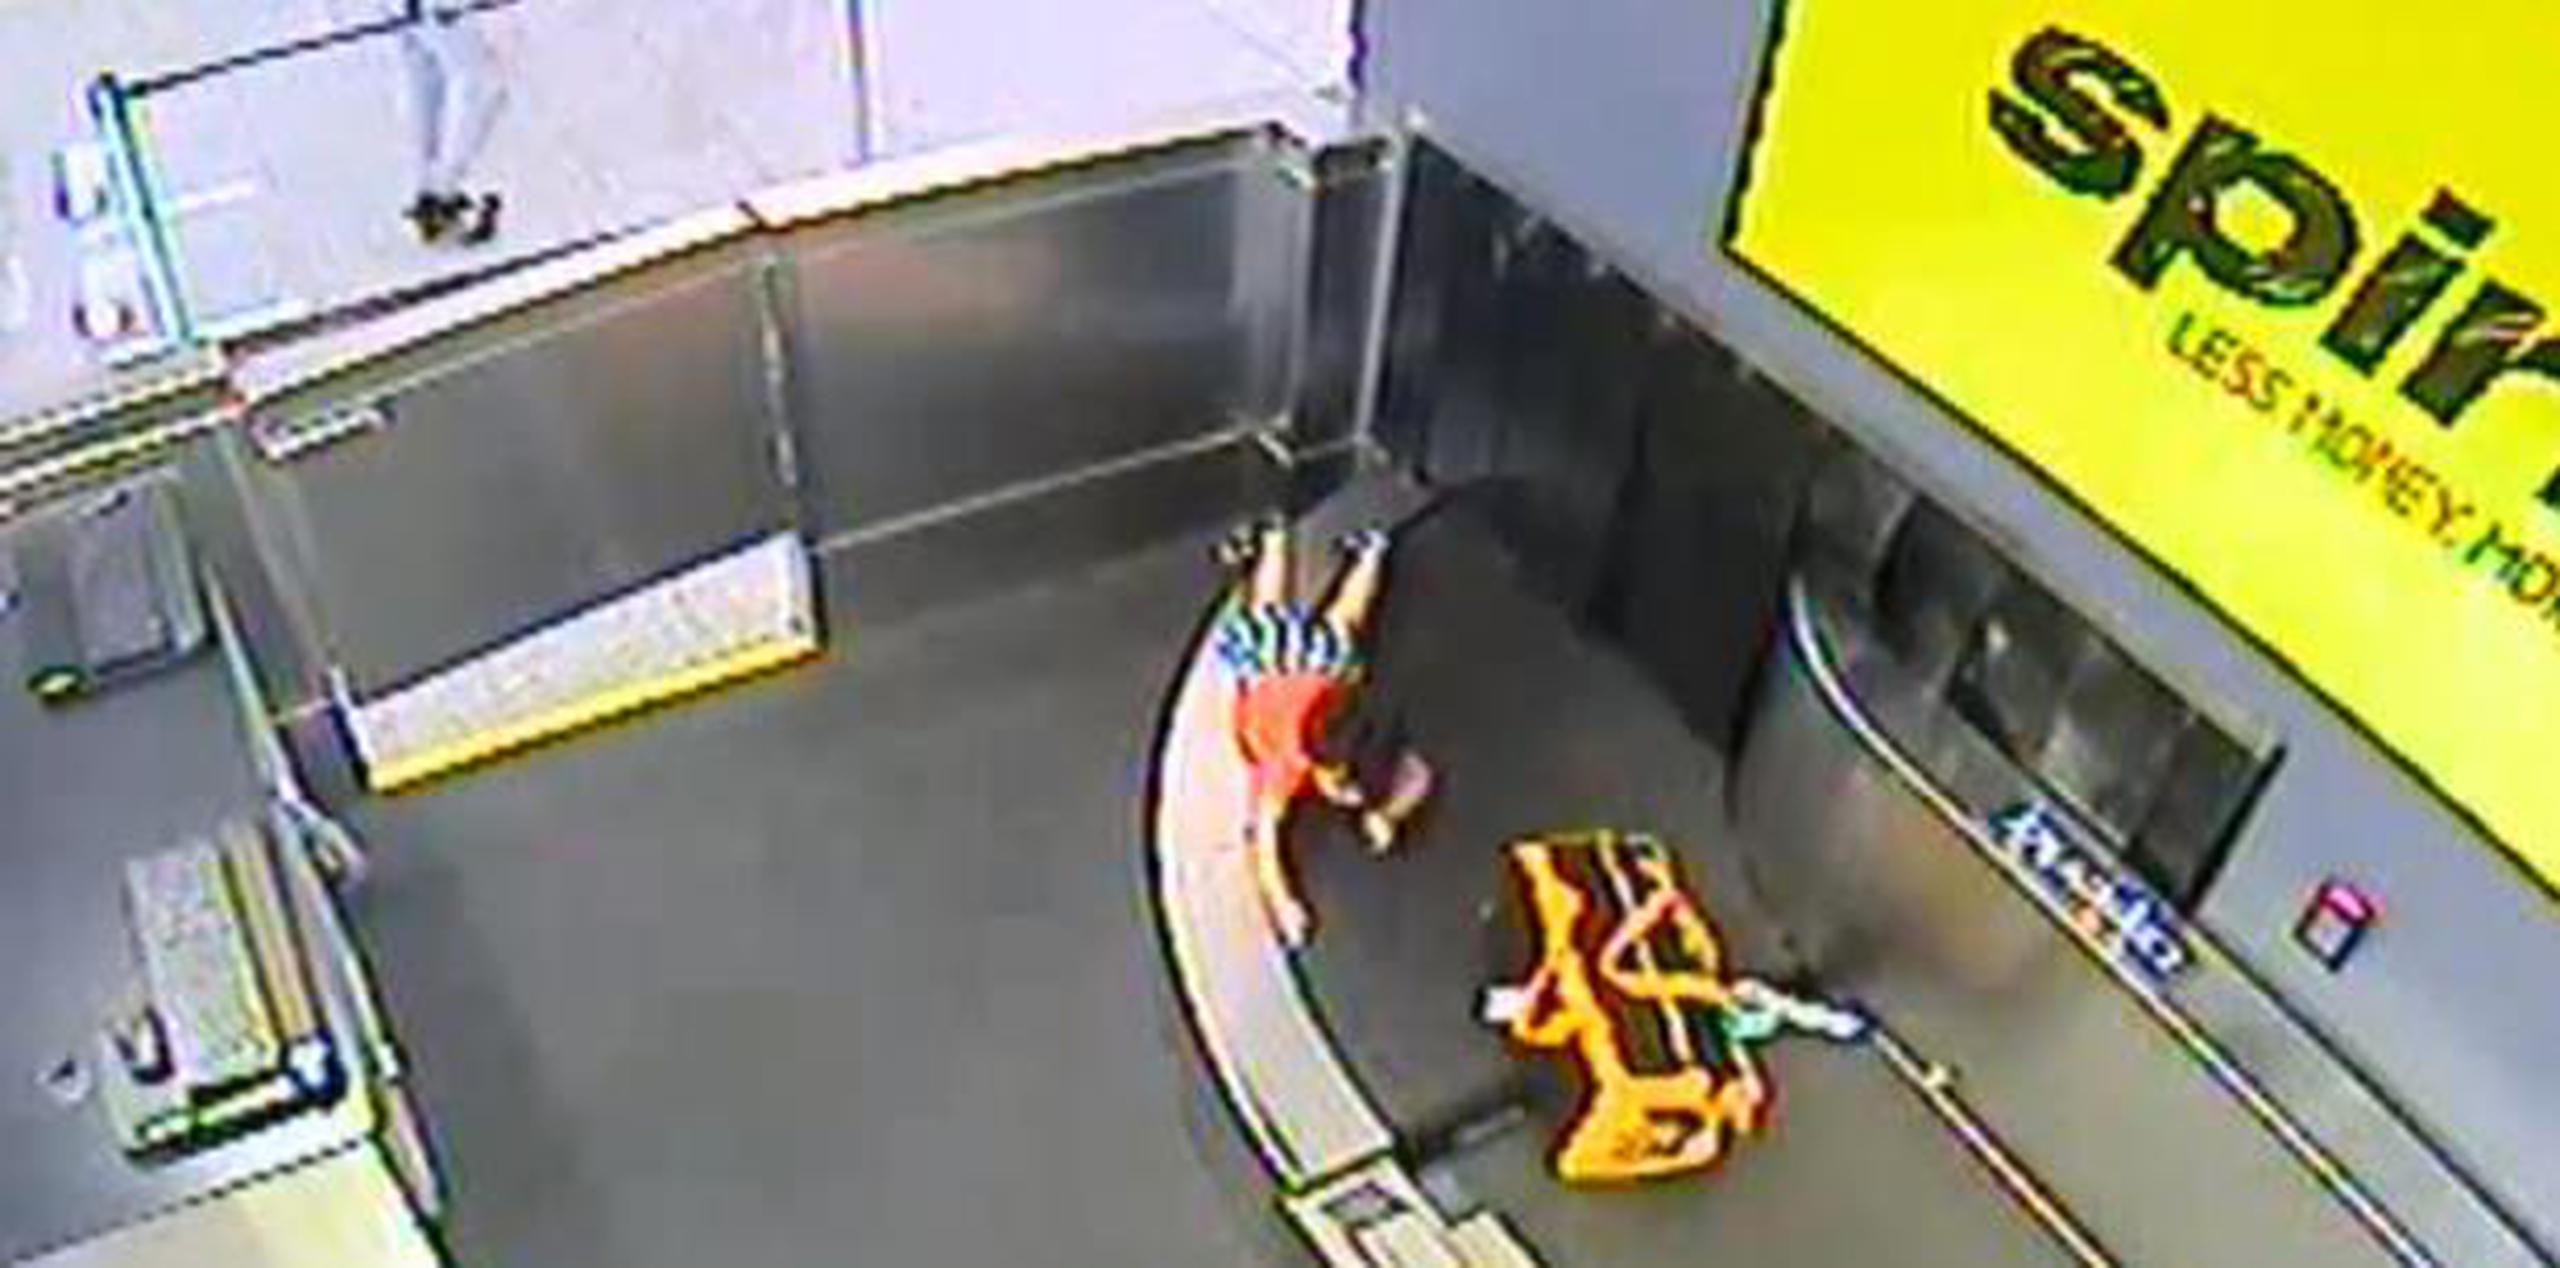 Las autoridades dijeron que el pequeño se fracturó una mano. (Aeropuerto Internacional Hartsfield-Jackson)